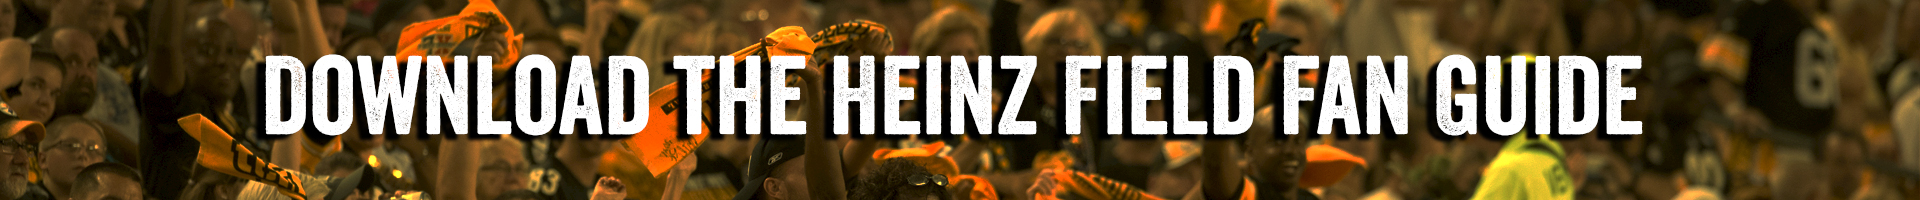 Download the Heinz Field Fan Guide